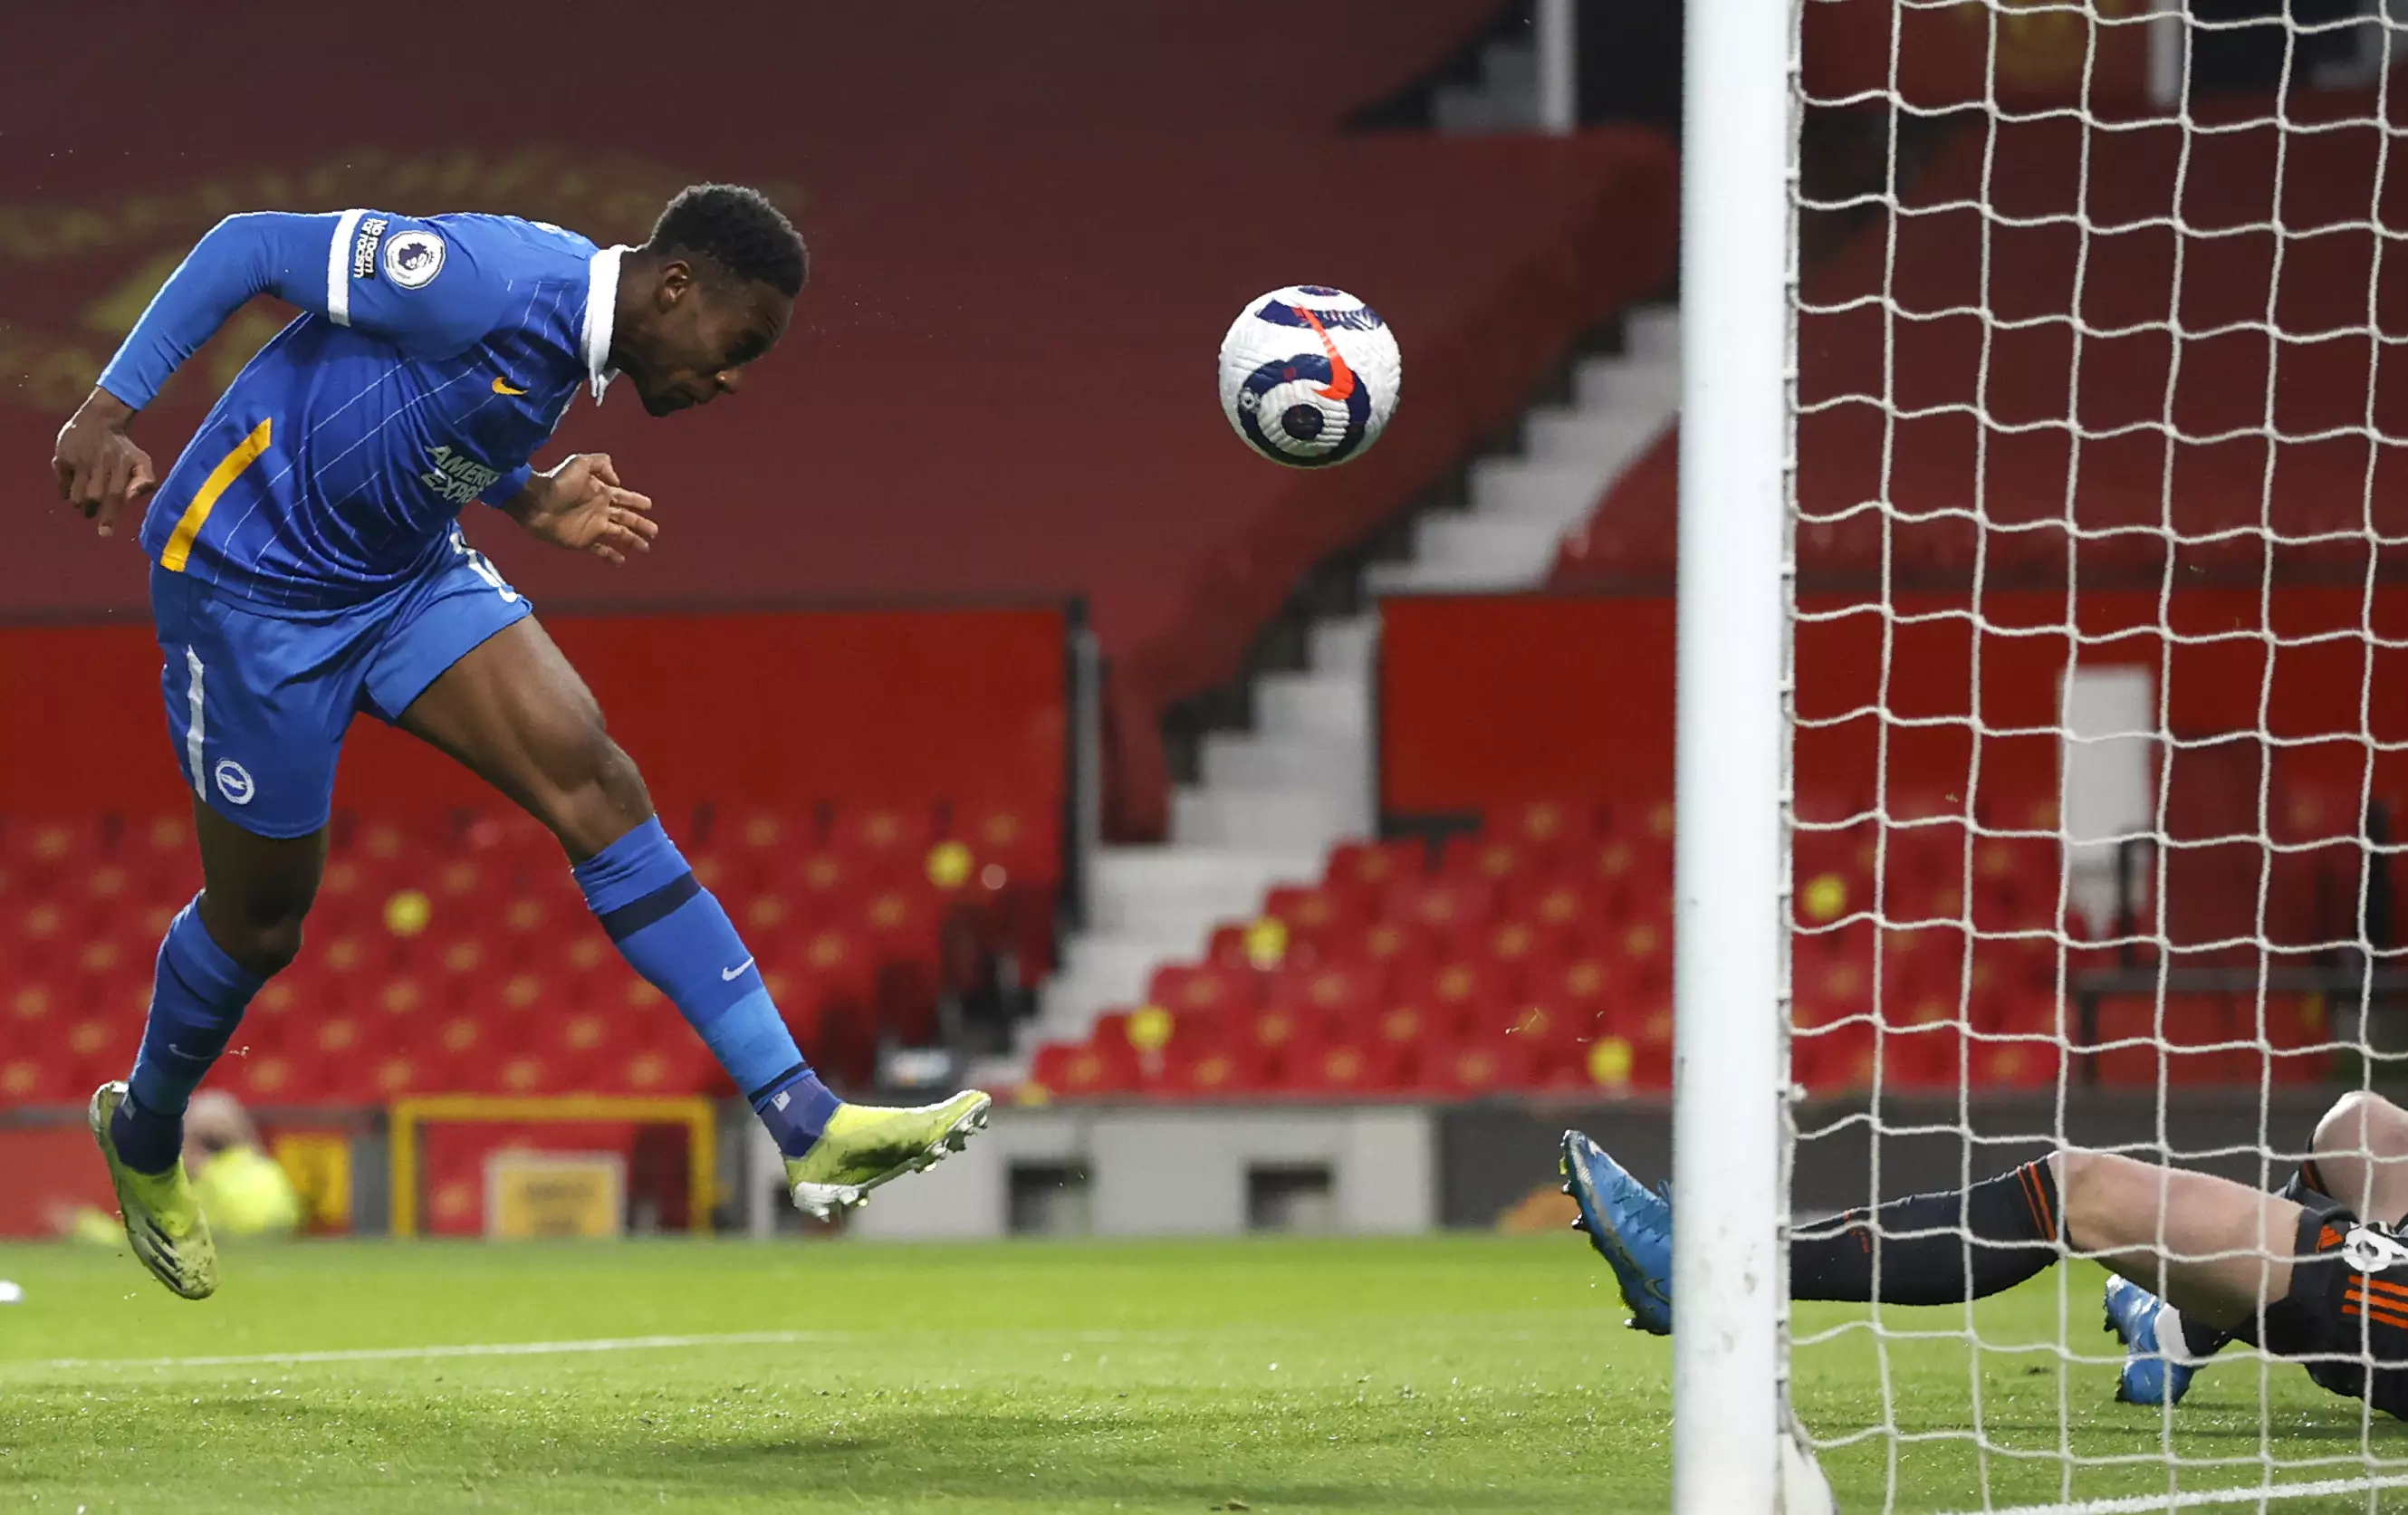 Welbeck scored against United on Sunday evening. Image: PA Images